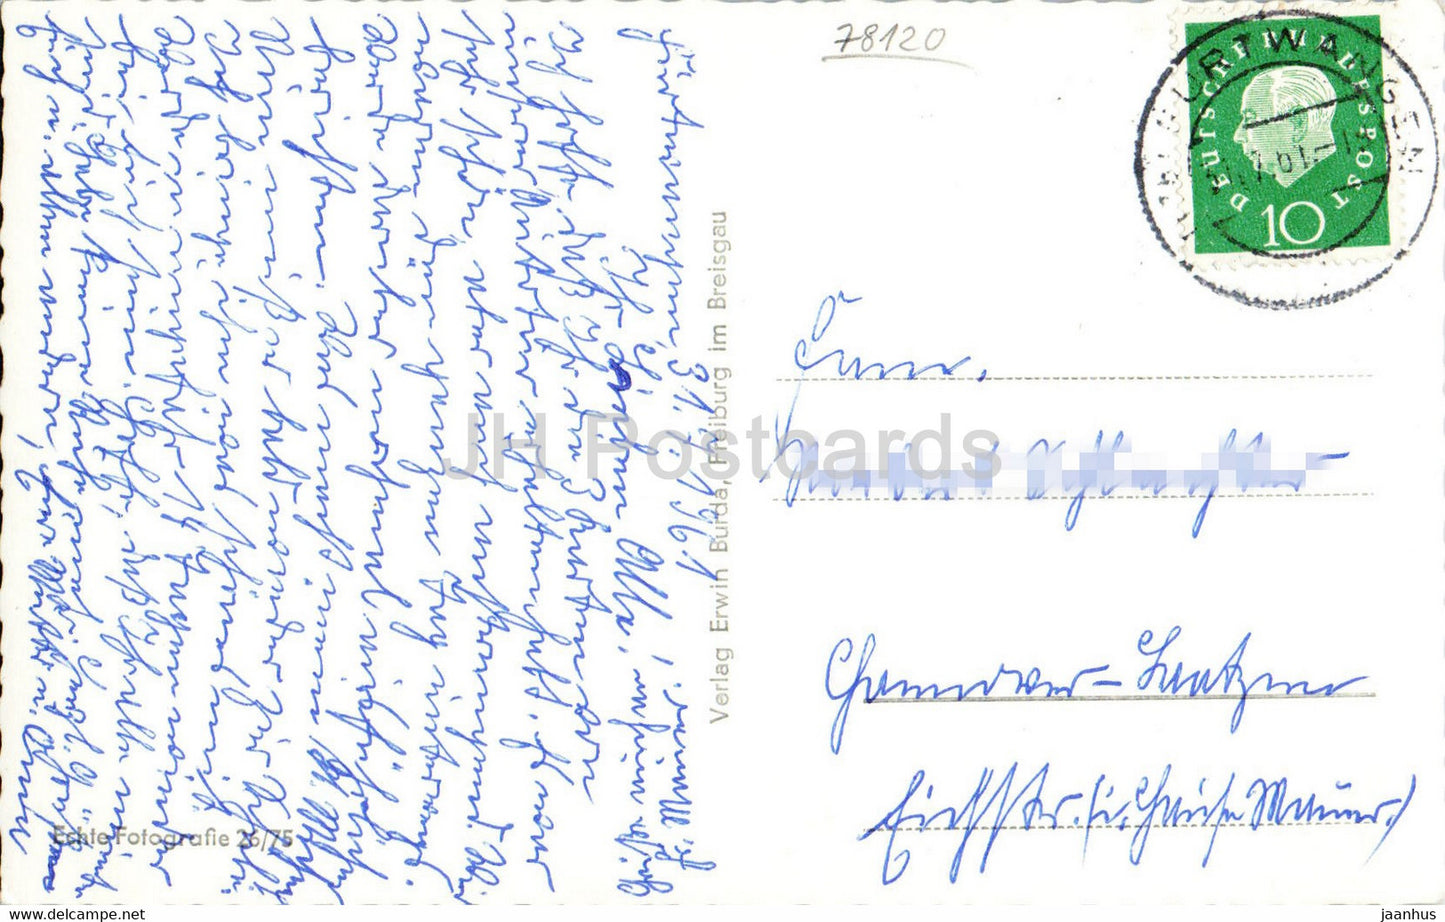 Hohenkurort Furtwangen 850 1150 m - old postcard - 1961 - Germany - used